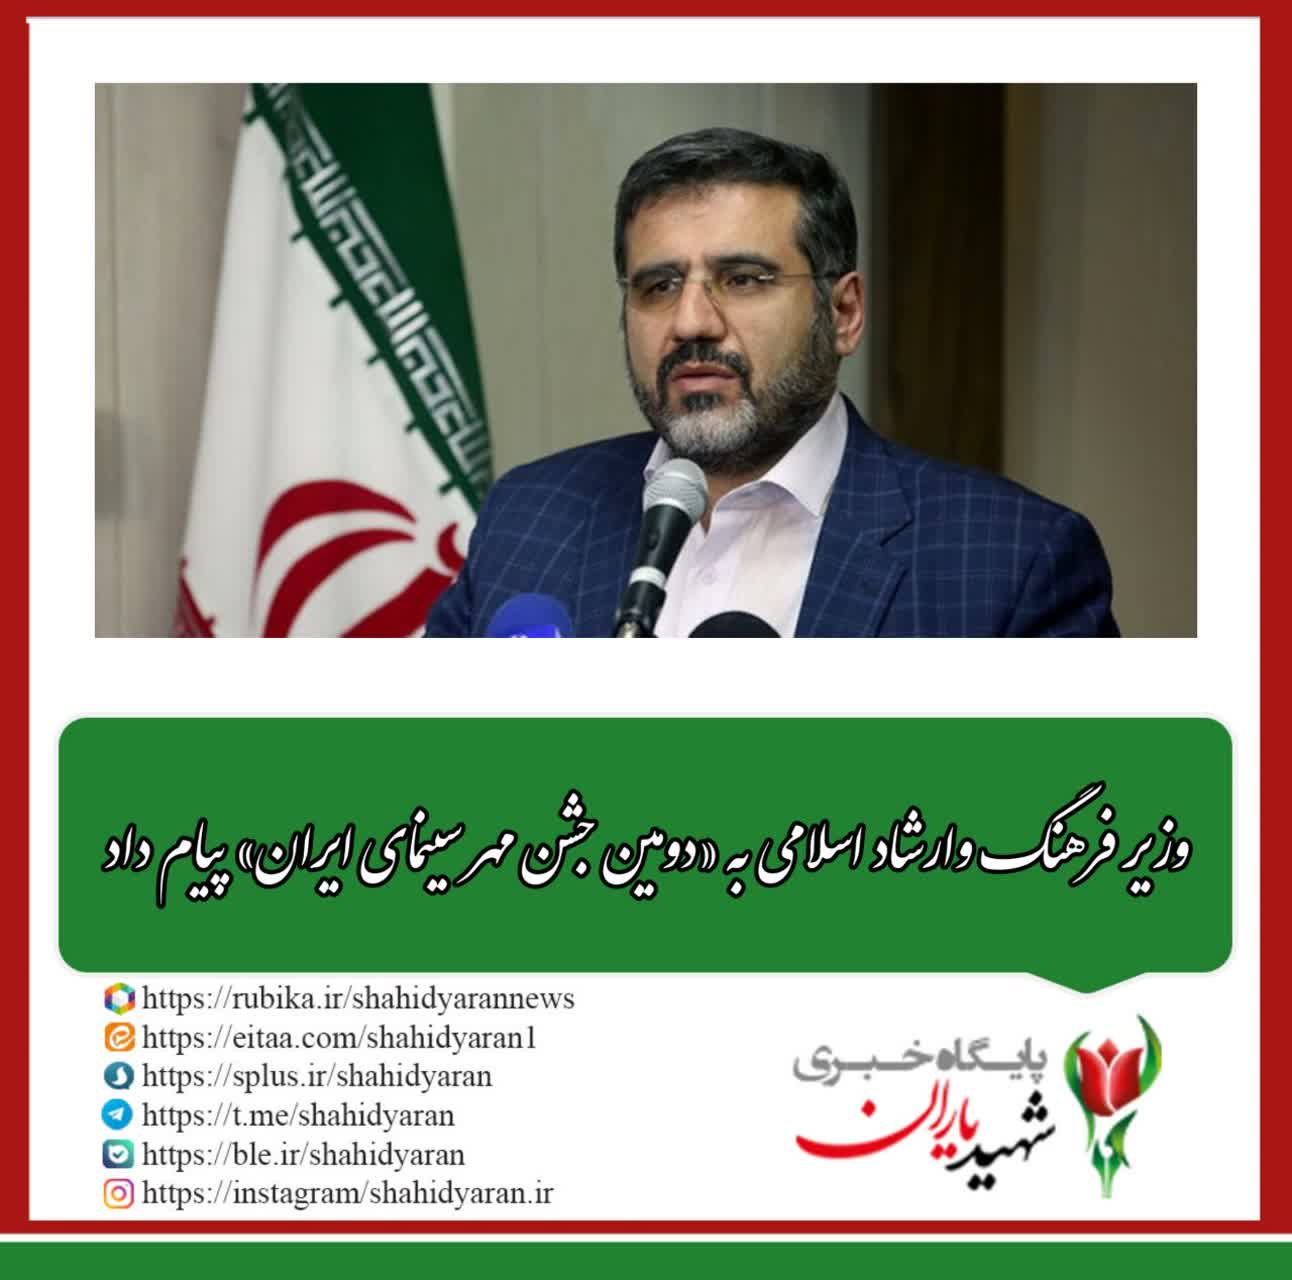 وزیر فرهنگ وارشاد اسلامی به «دومین جشن مهر سینمای ایران» پیام داد